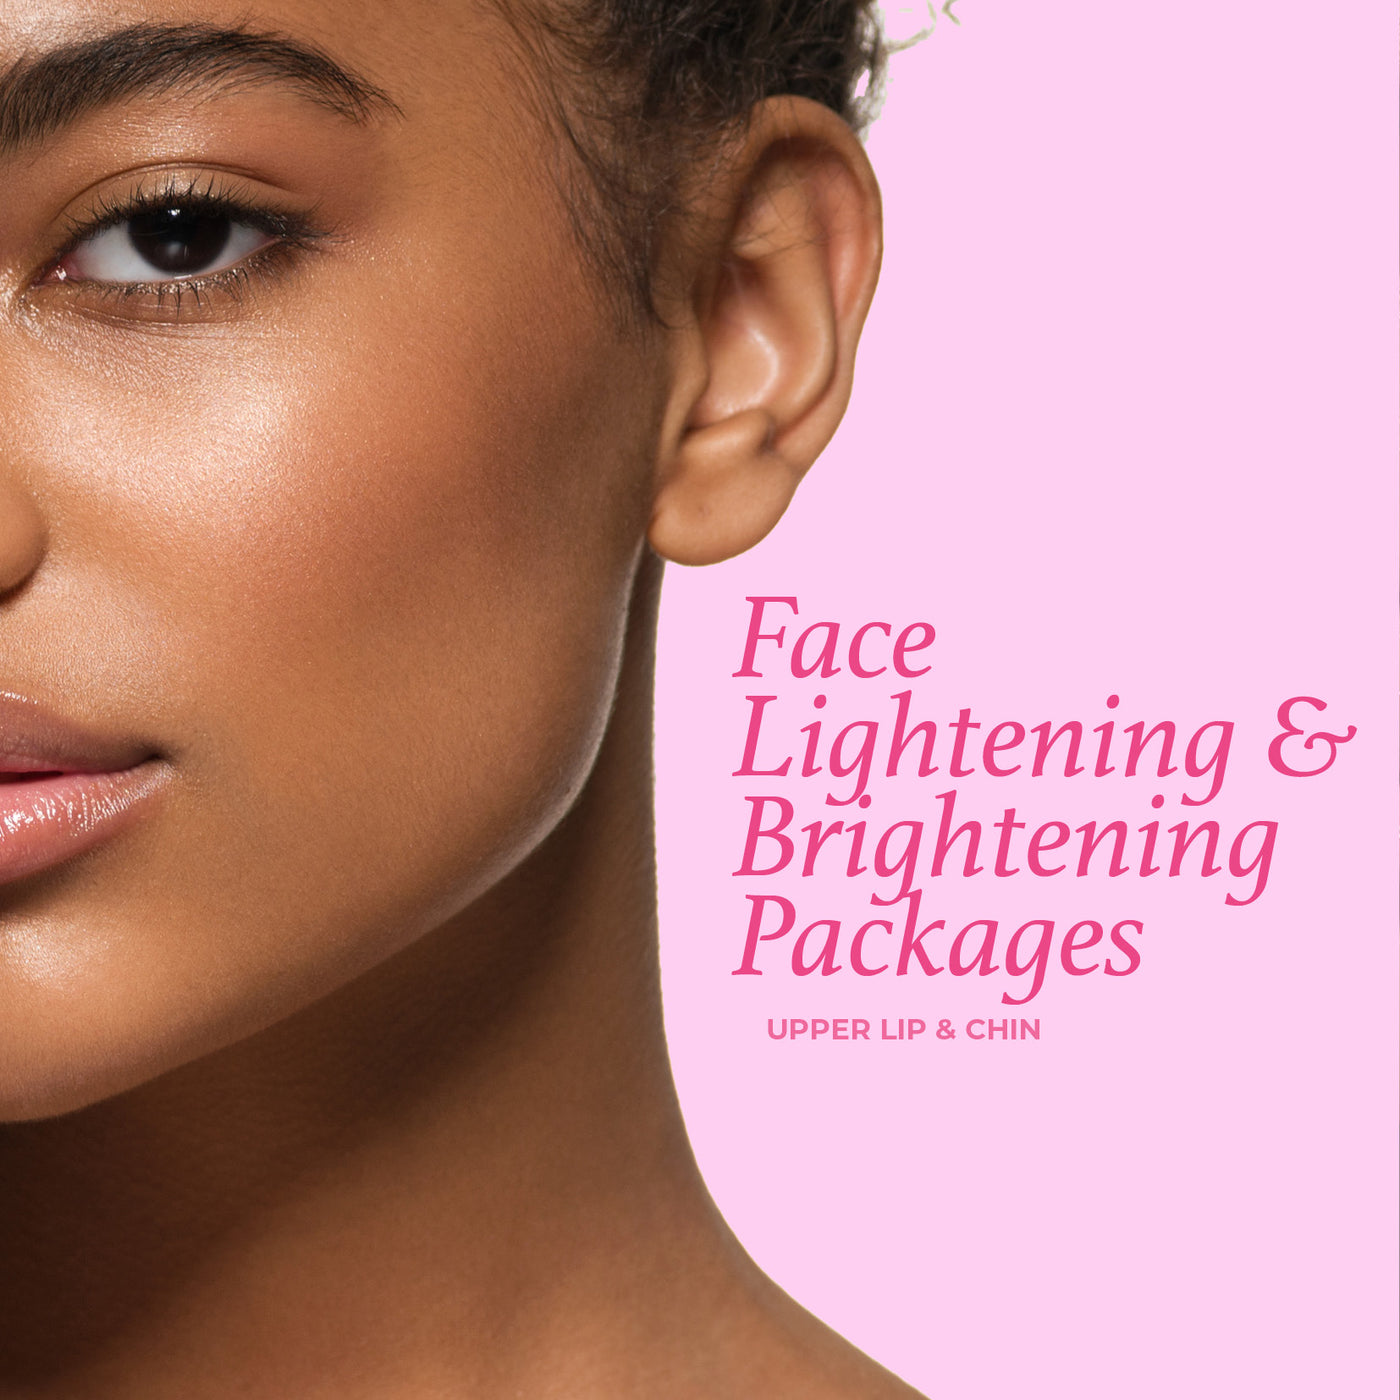 Face Lightening & Brightening Package - Upper Lip & Chin